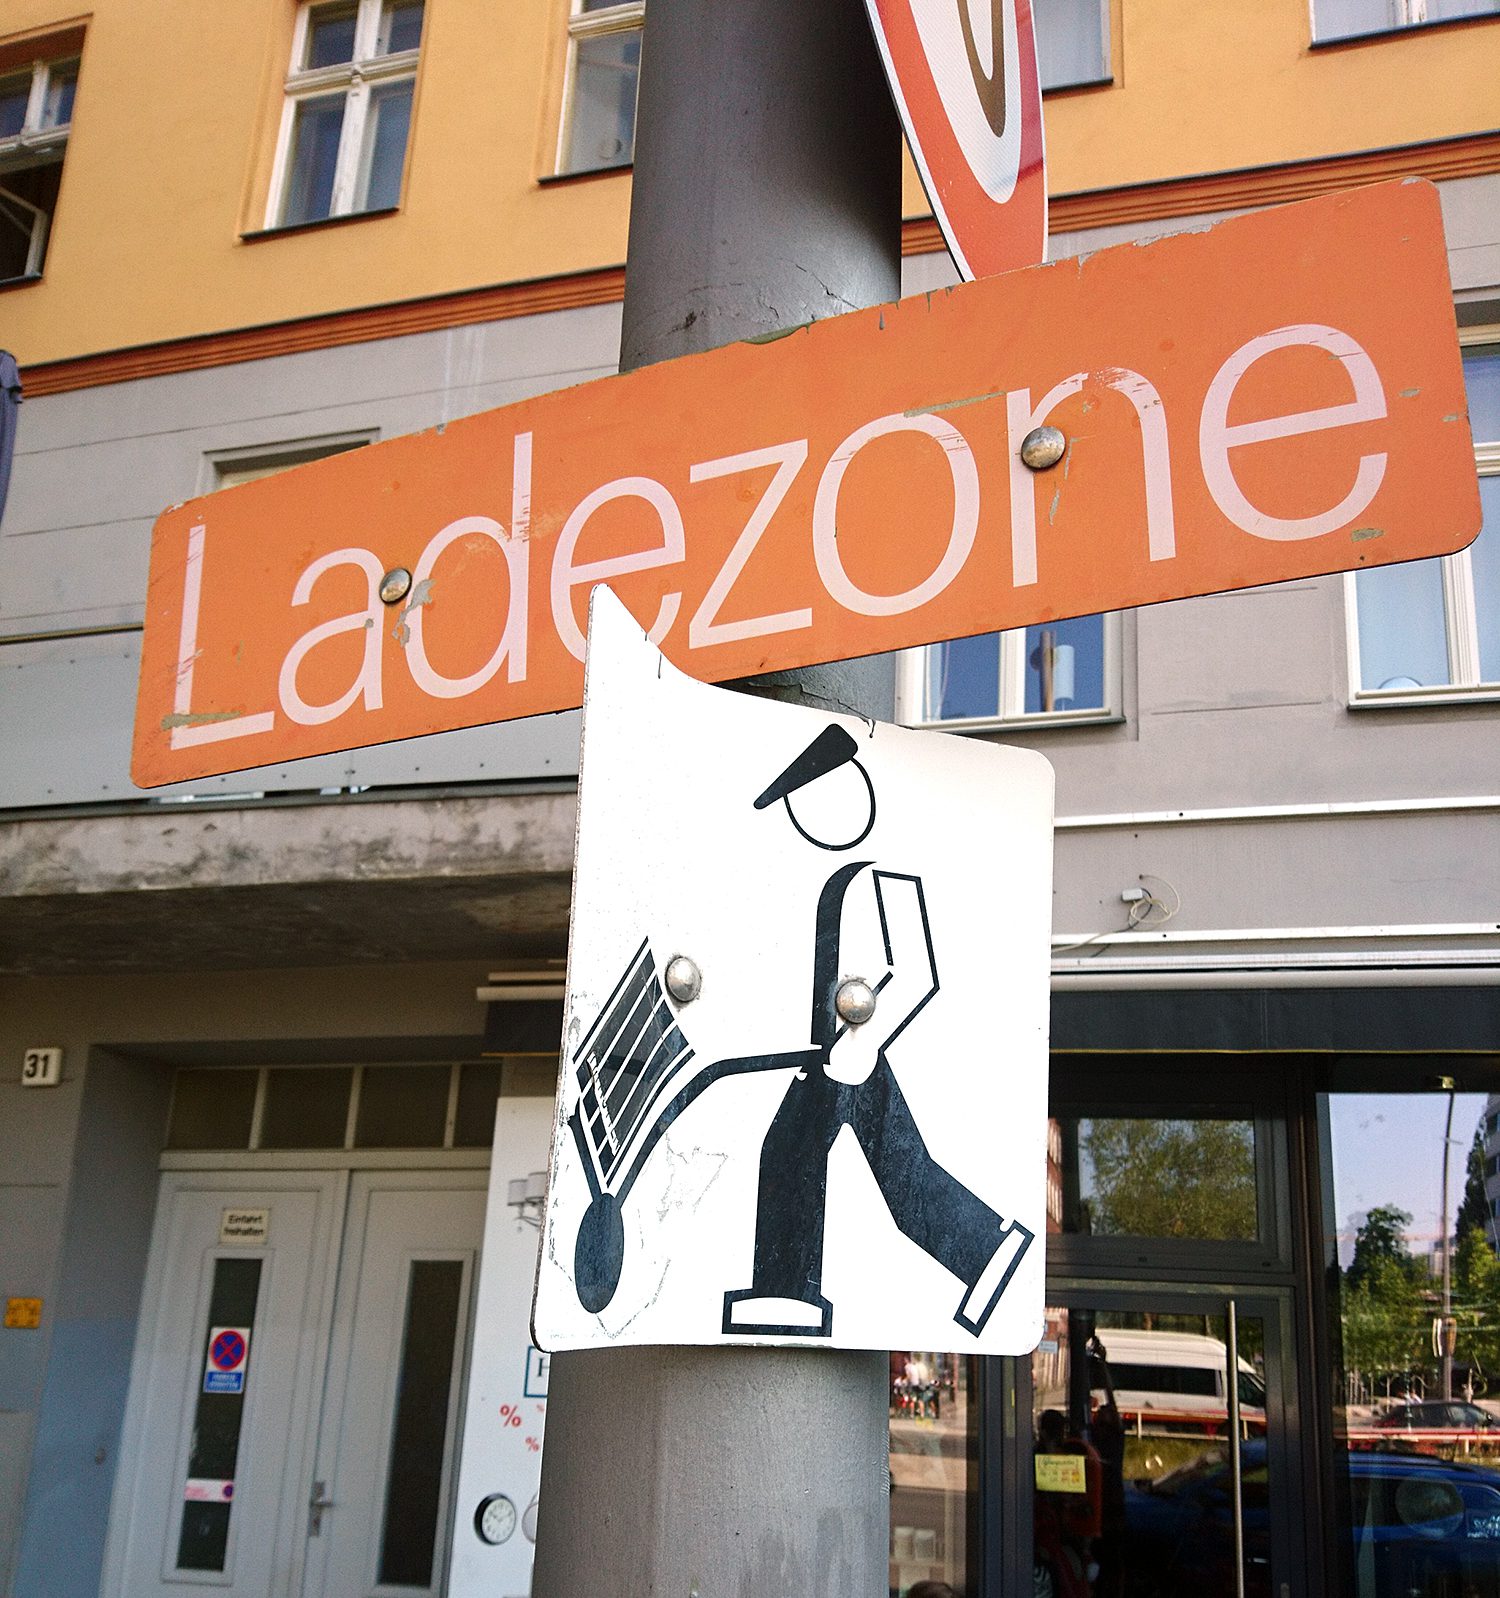 Die neuen, offiziellen Lieferzonen-Schilder fehlen dezeit noch. In der Müllerstraße, gegenüber dem Rathaus, hängen derzweil diese. Foto: Schnell